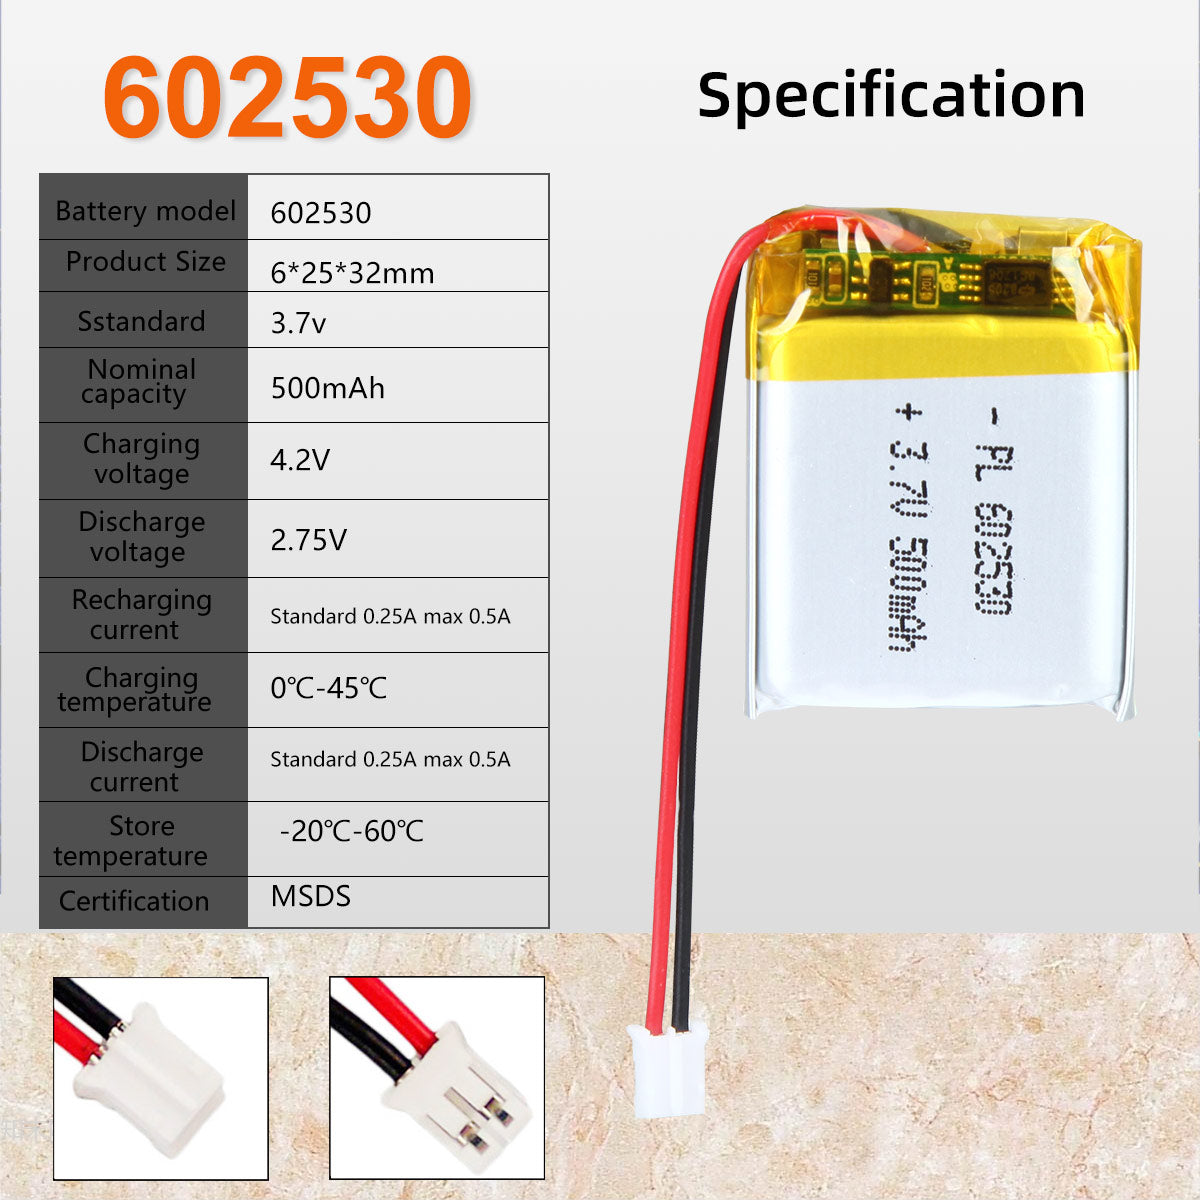 3.7V 500mAh 602530 Batterie lithium-polymère rechargeable Longueur 32mm